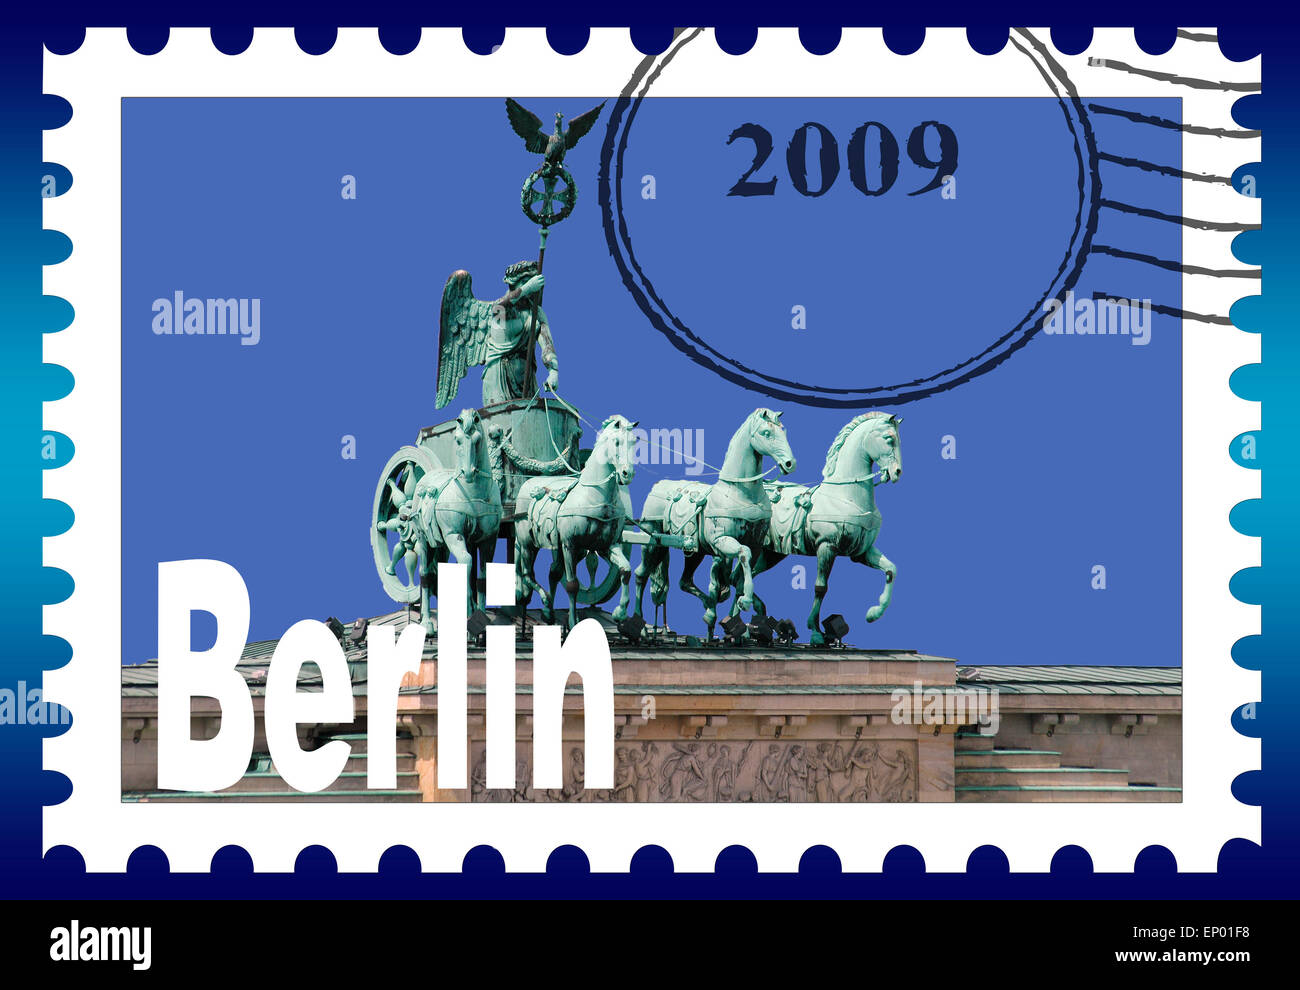 Symbolbild/ Briefmarke: die Quadriga auf dem Brandenburger Tor/ symbolic image/ stamp: the Quadriga on the Brandenburg gate, Berlin. Stock Photo